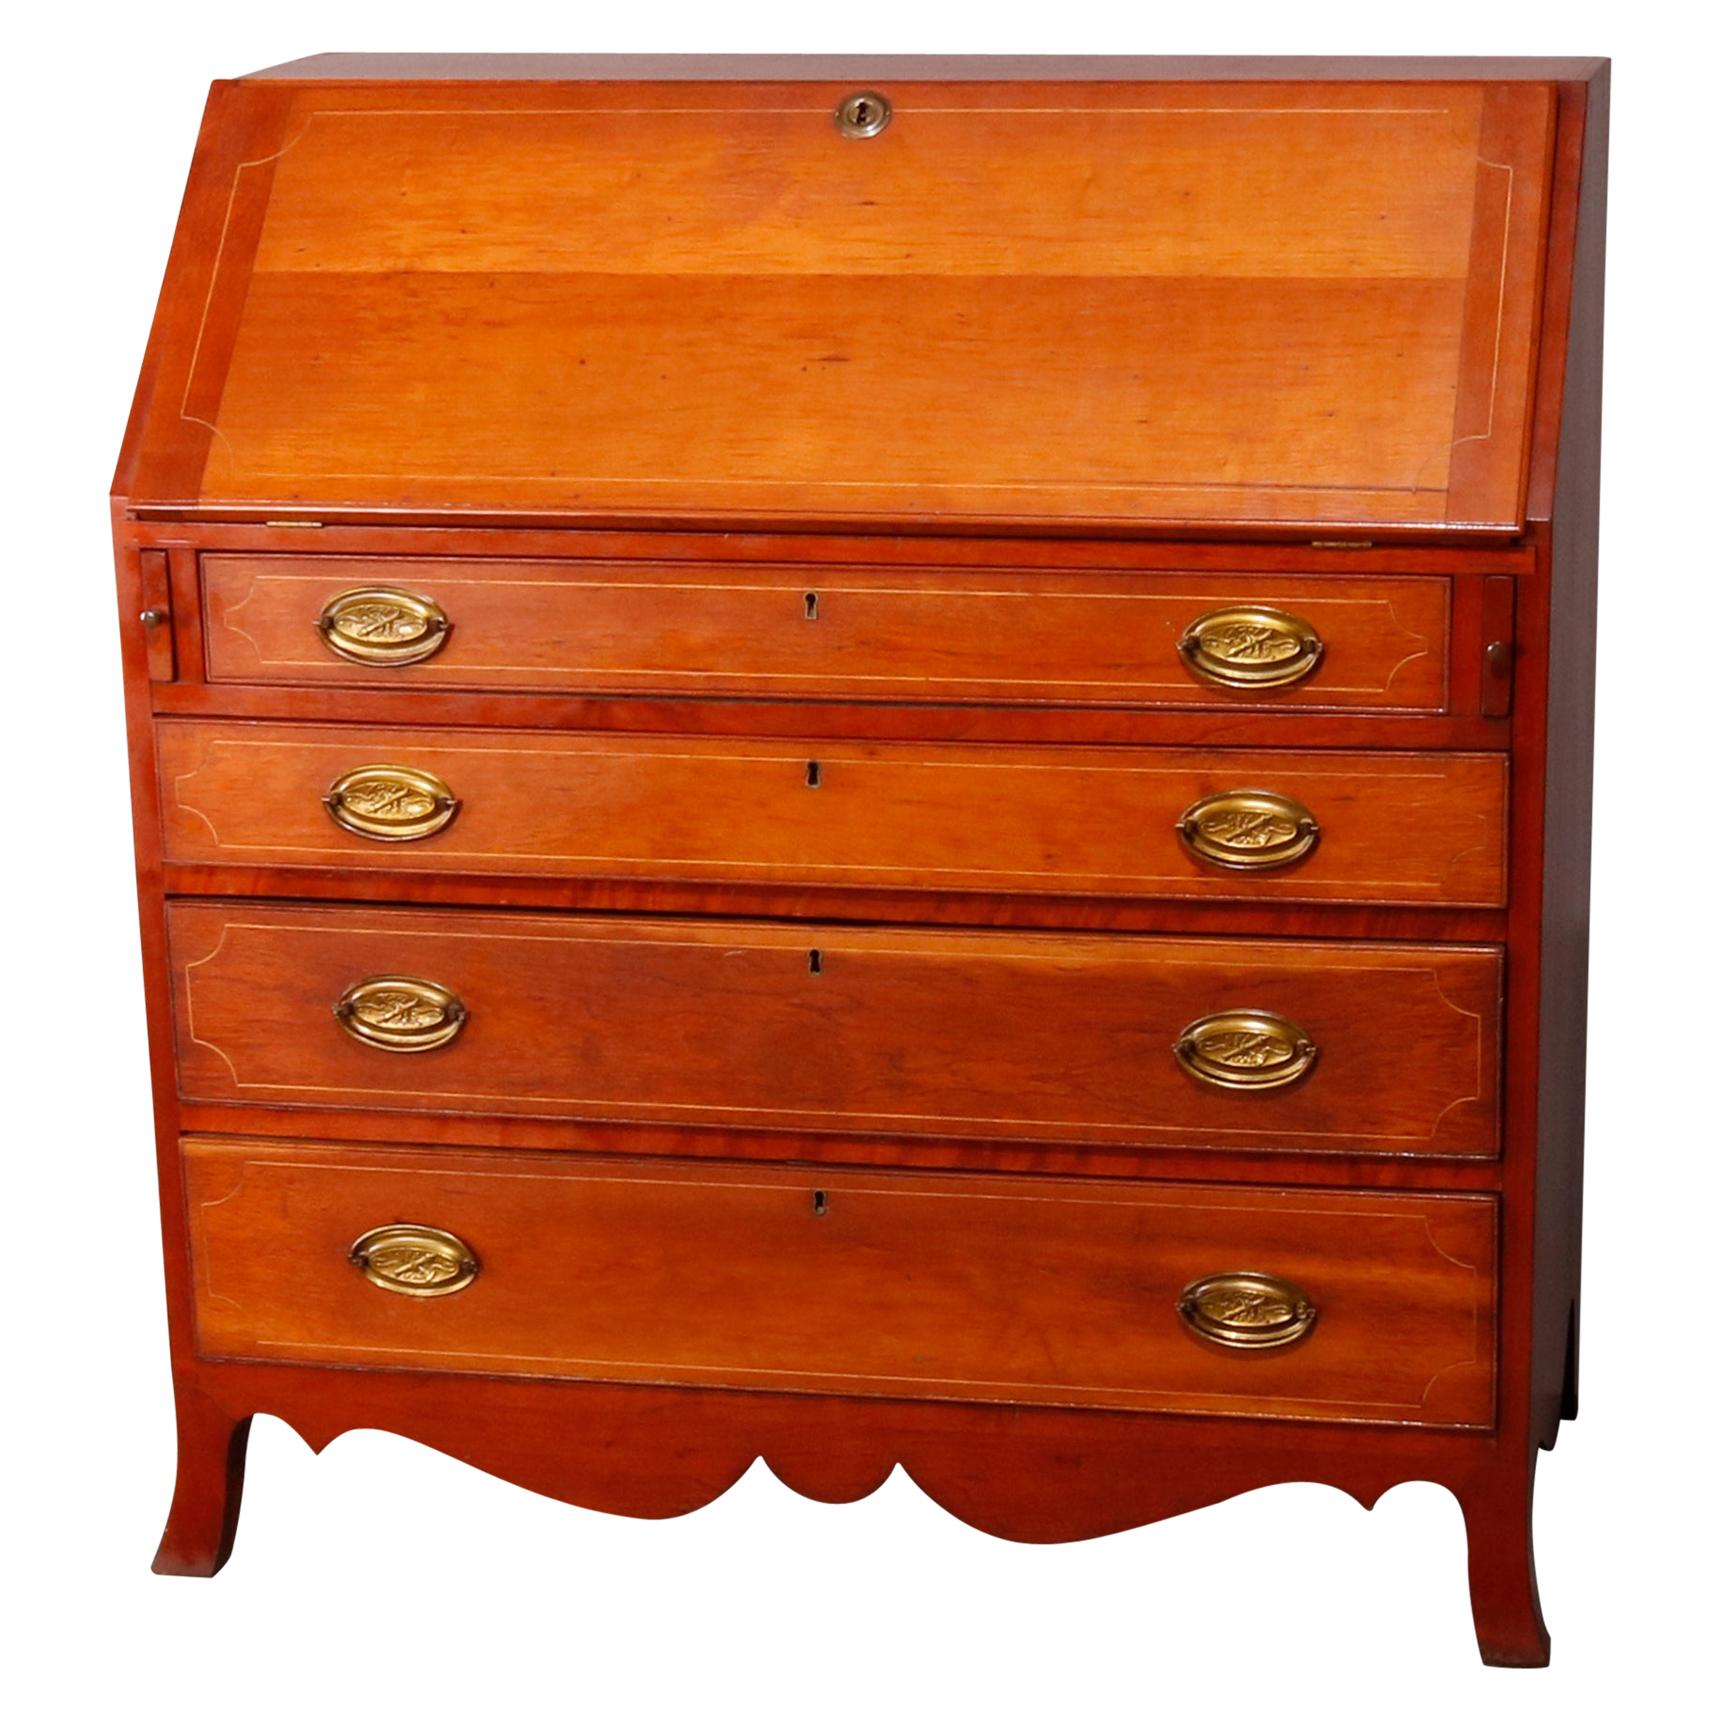 Antique English Hepplewhite Style Satinwood Banded Cherry Slant Front Desk